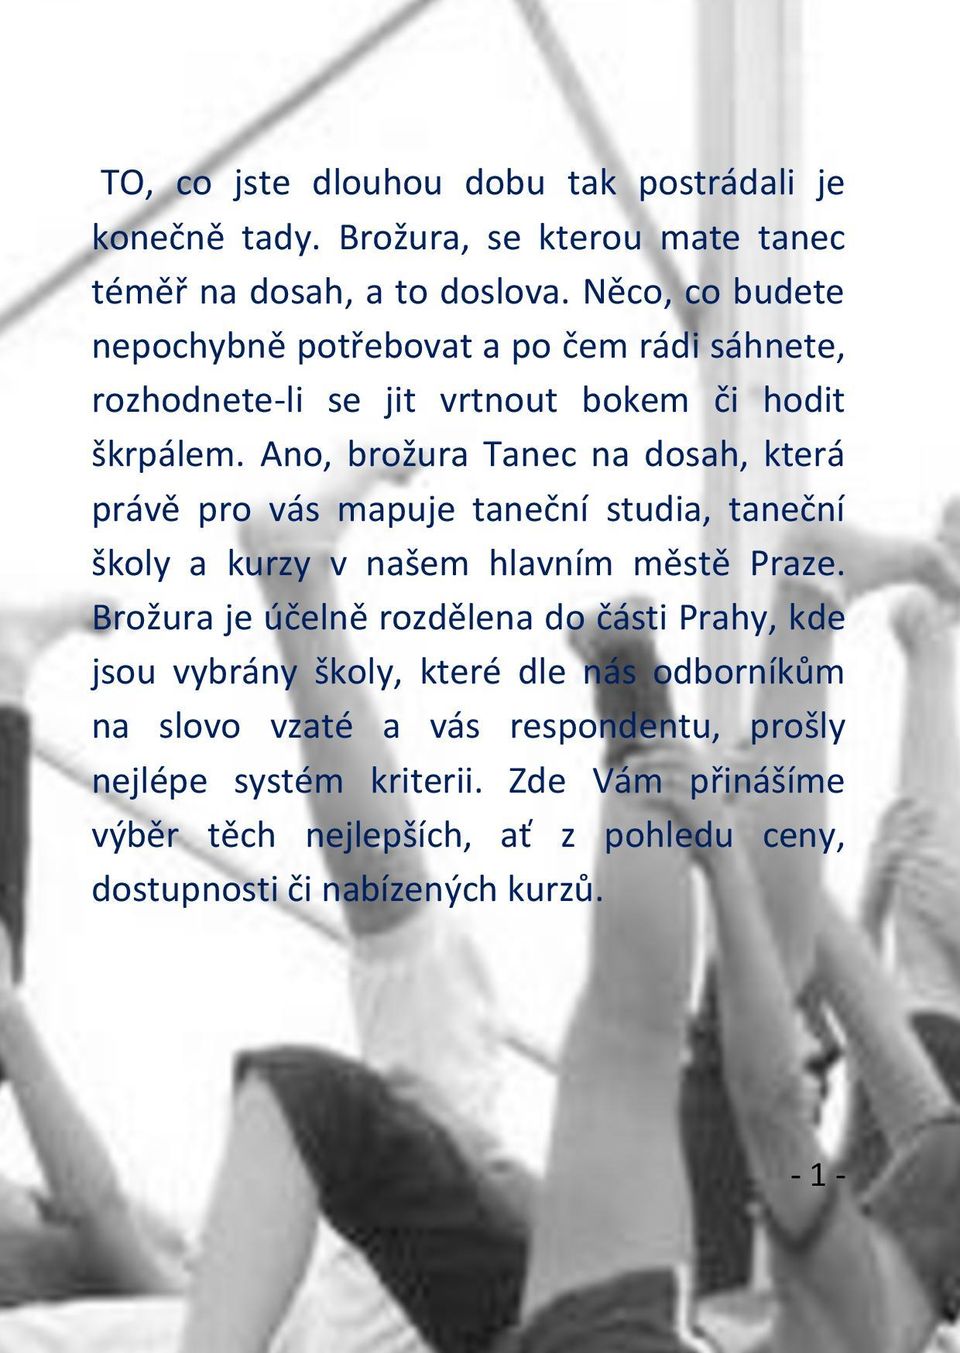 Ano, brožura Tanec na dosah, která právě pro vás mapuje taneční studia, taneční školy a kurzy v našem hlavním městě Praze.